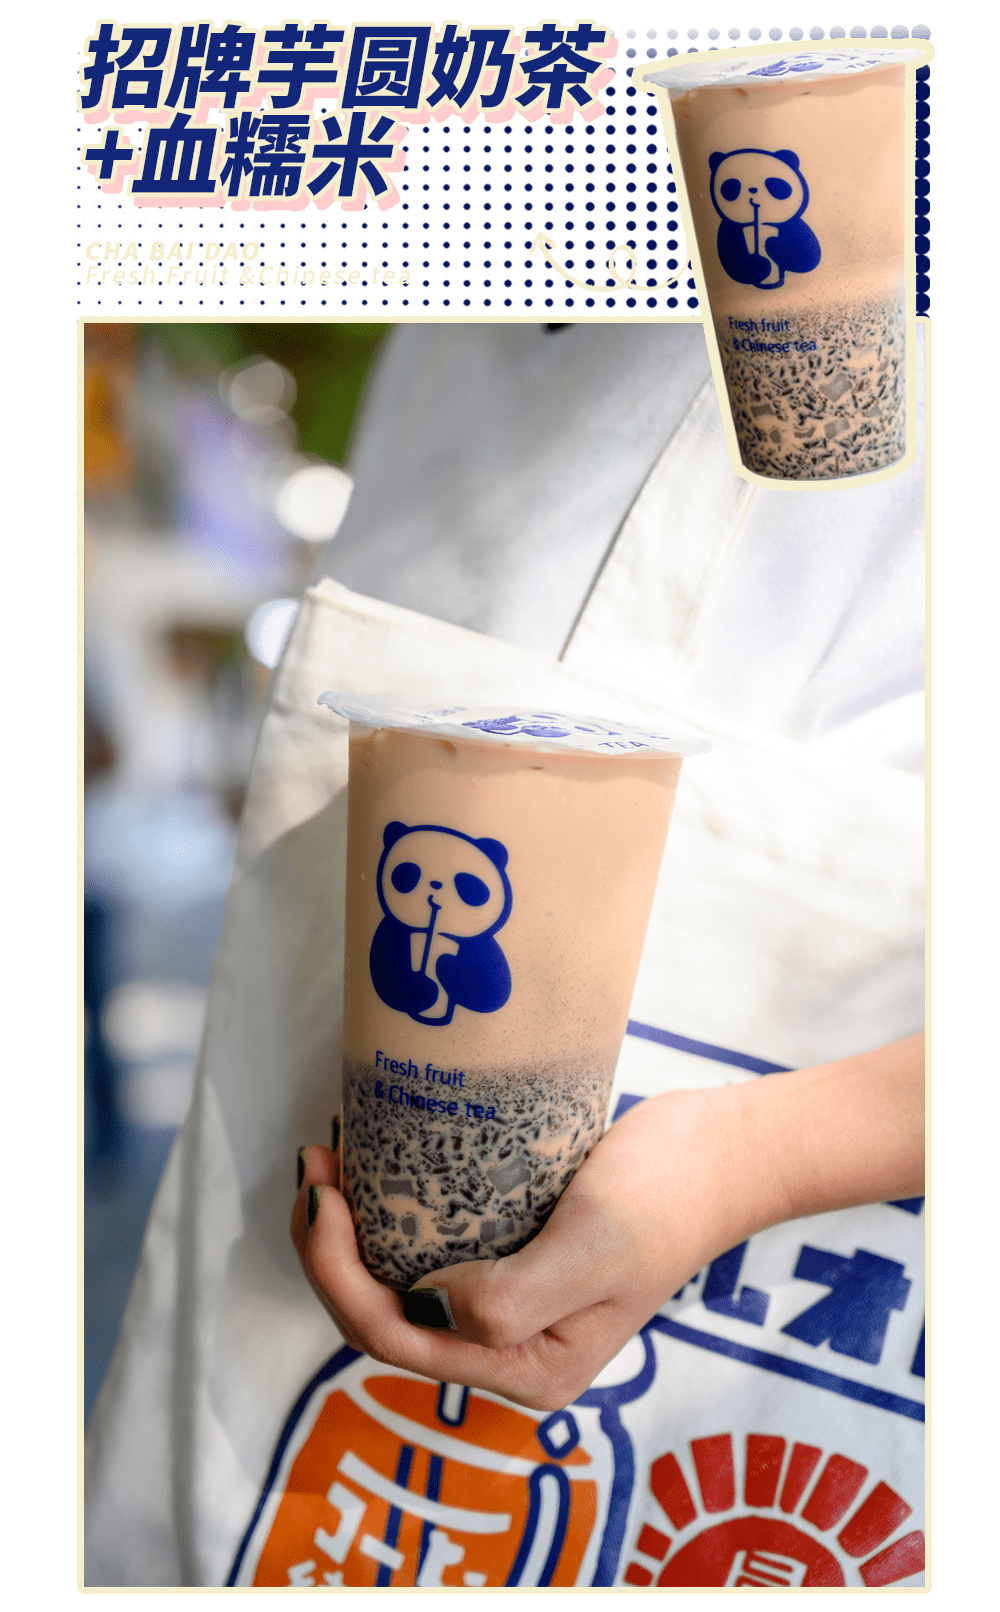 茶百道周年庆 新品来袭,秋季限定"满杯料"让你喝过瘾!_奶茶